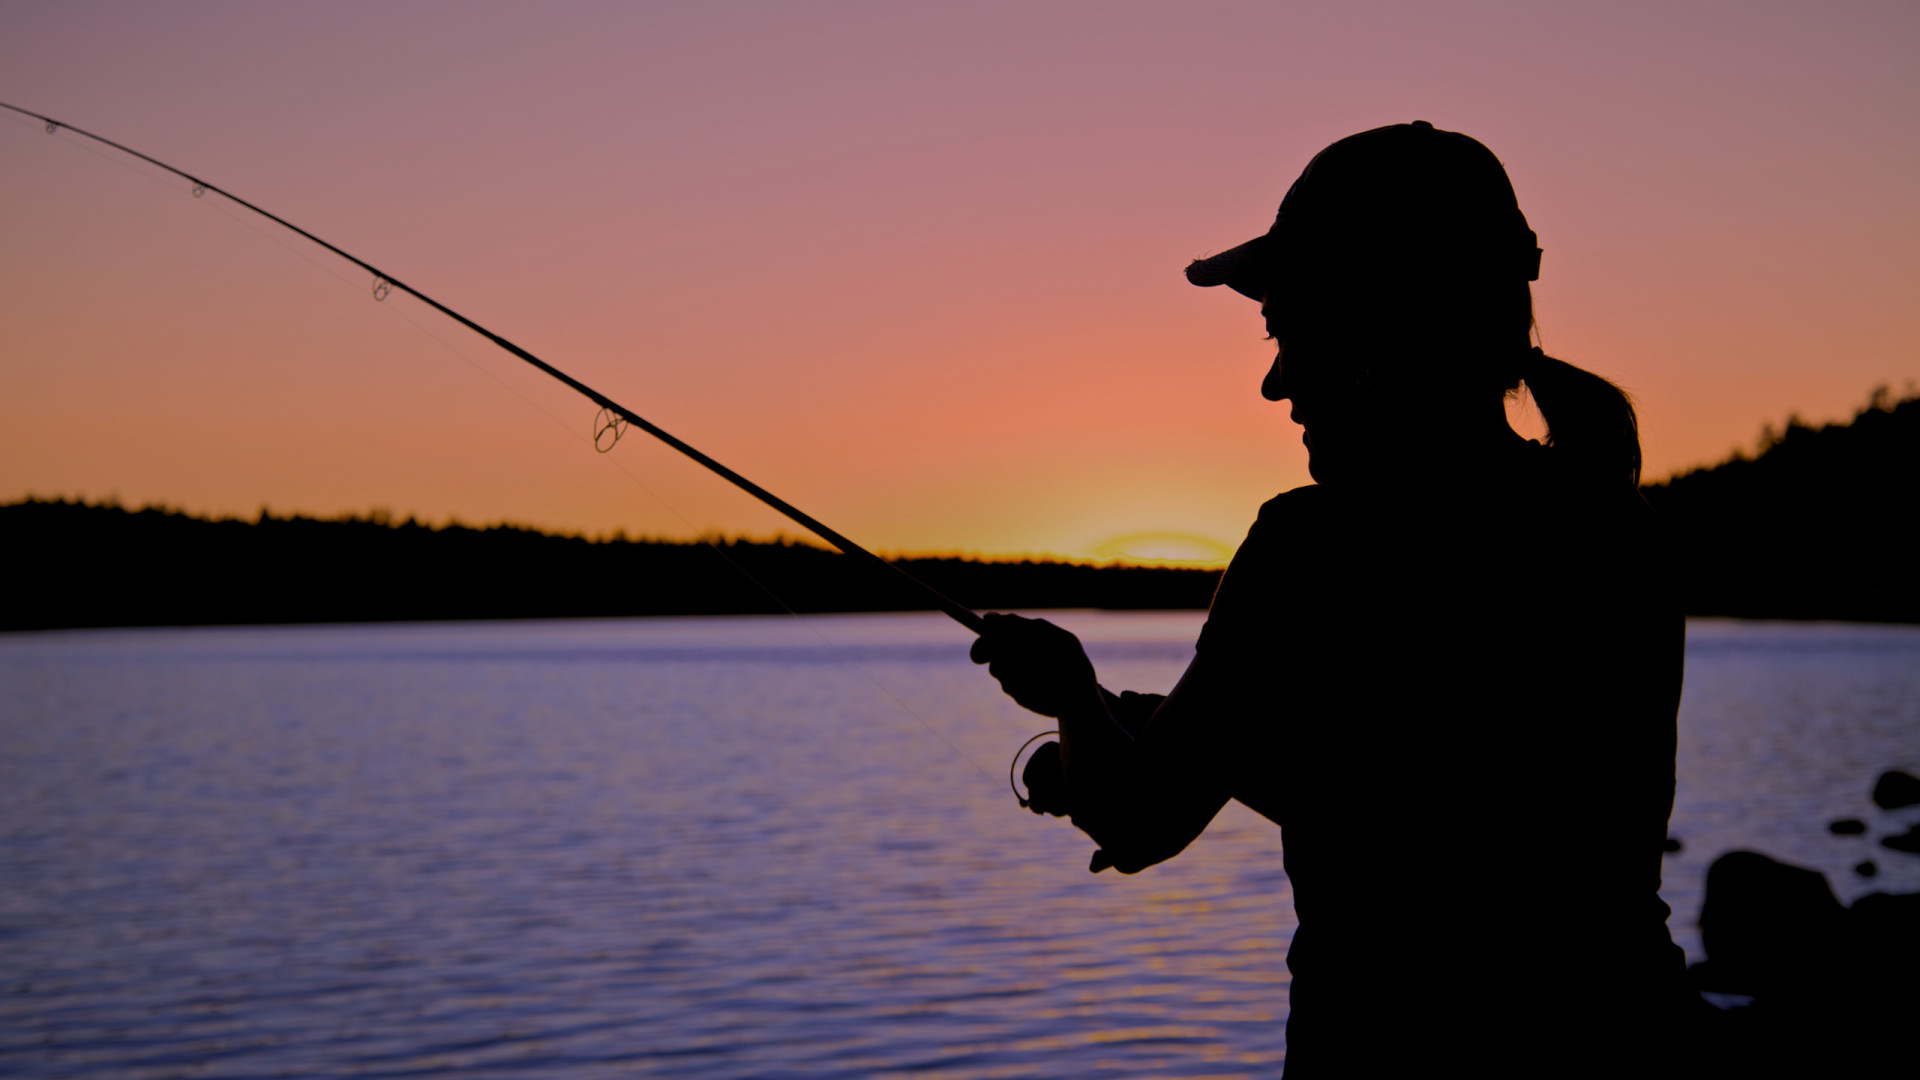 Mulheres são maioria dos pescadores profissionais em 5 estados do país